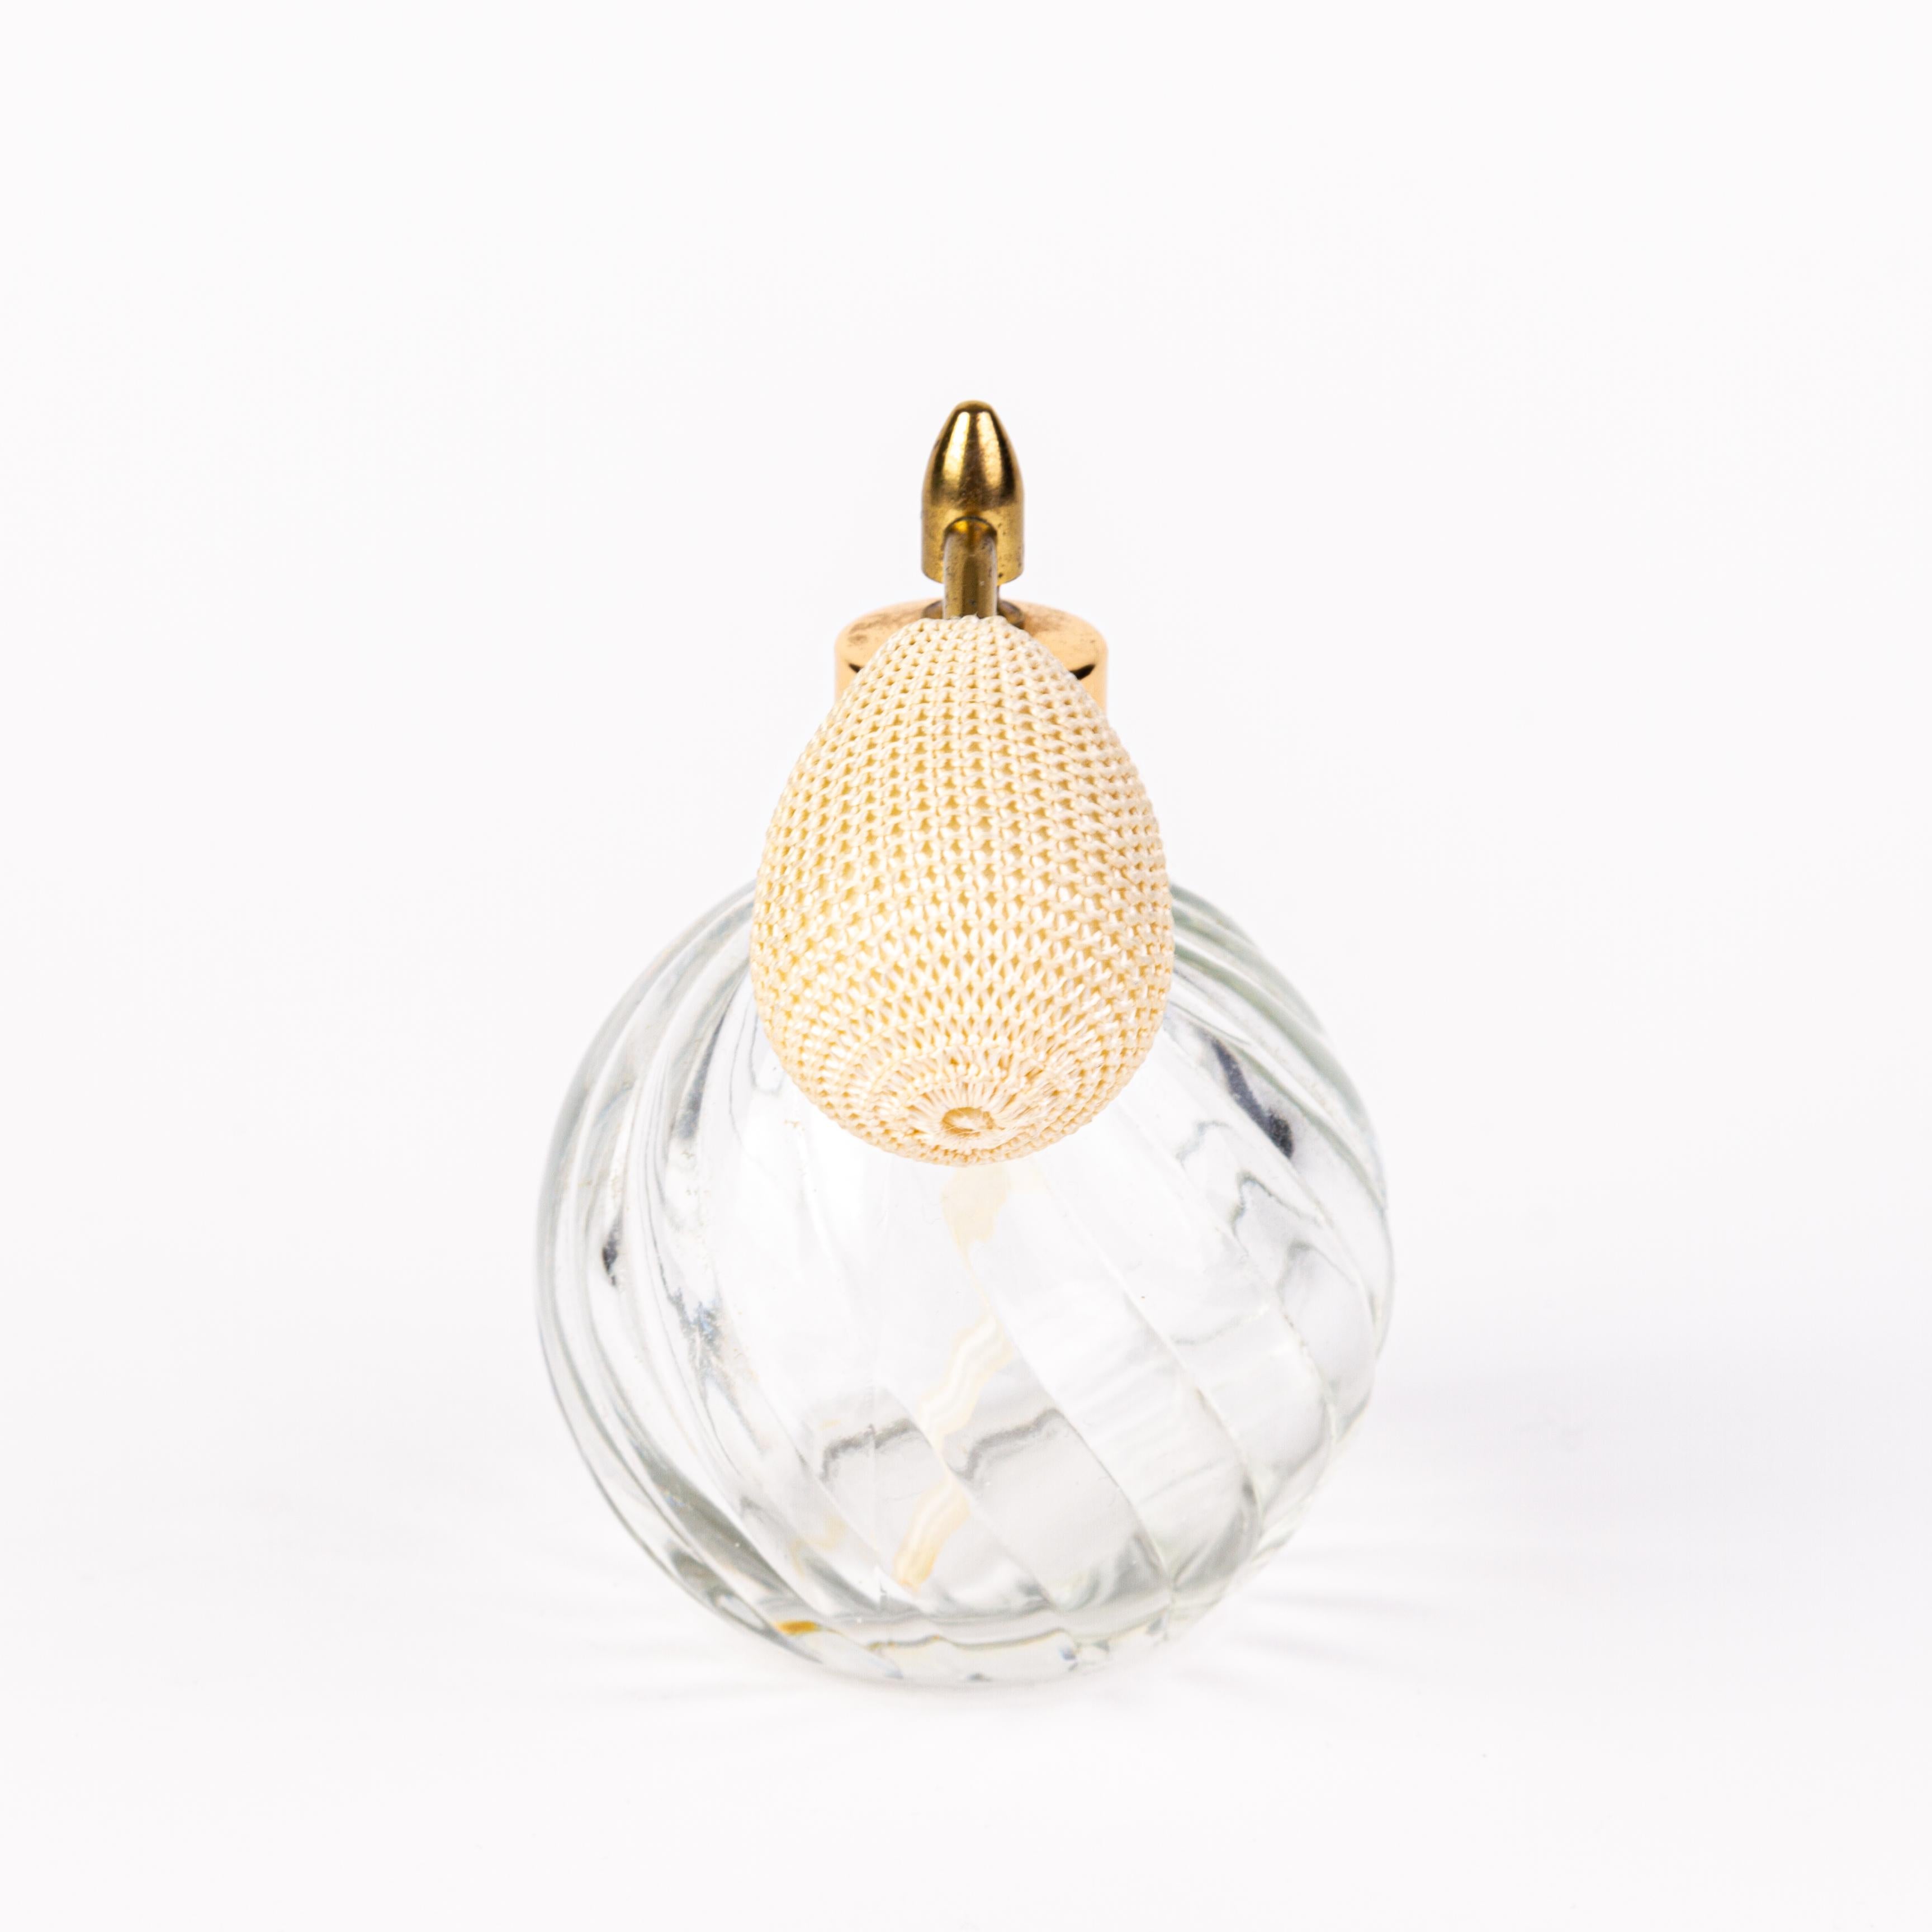 20th Century Venetian Crystal Glass Perfume Atomiser Bottle  For Sale